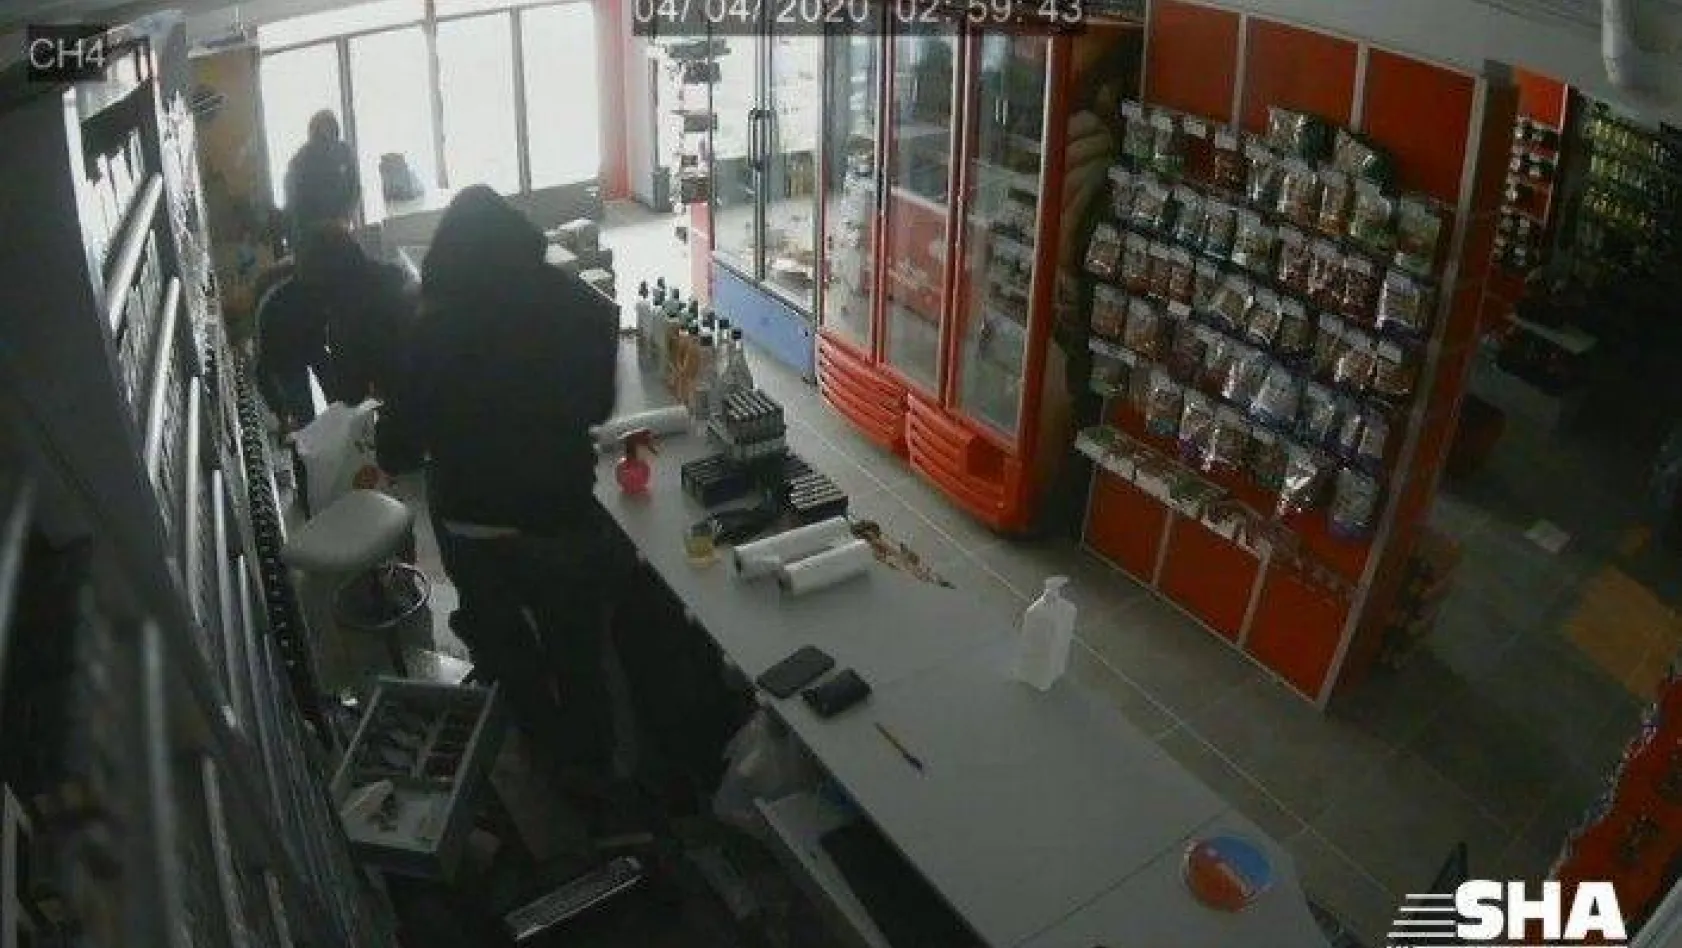 İşyeri çalışanı müdahale etmek istedi, hırsızlar silahla kovaladı